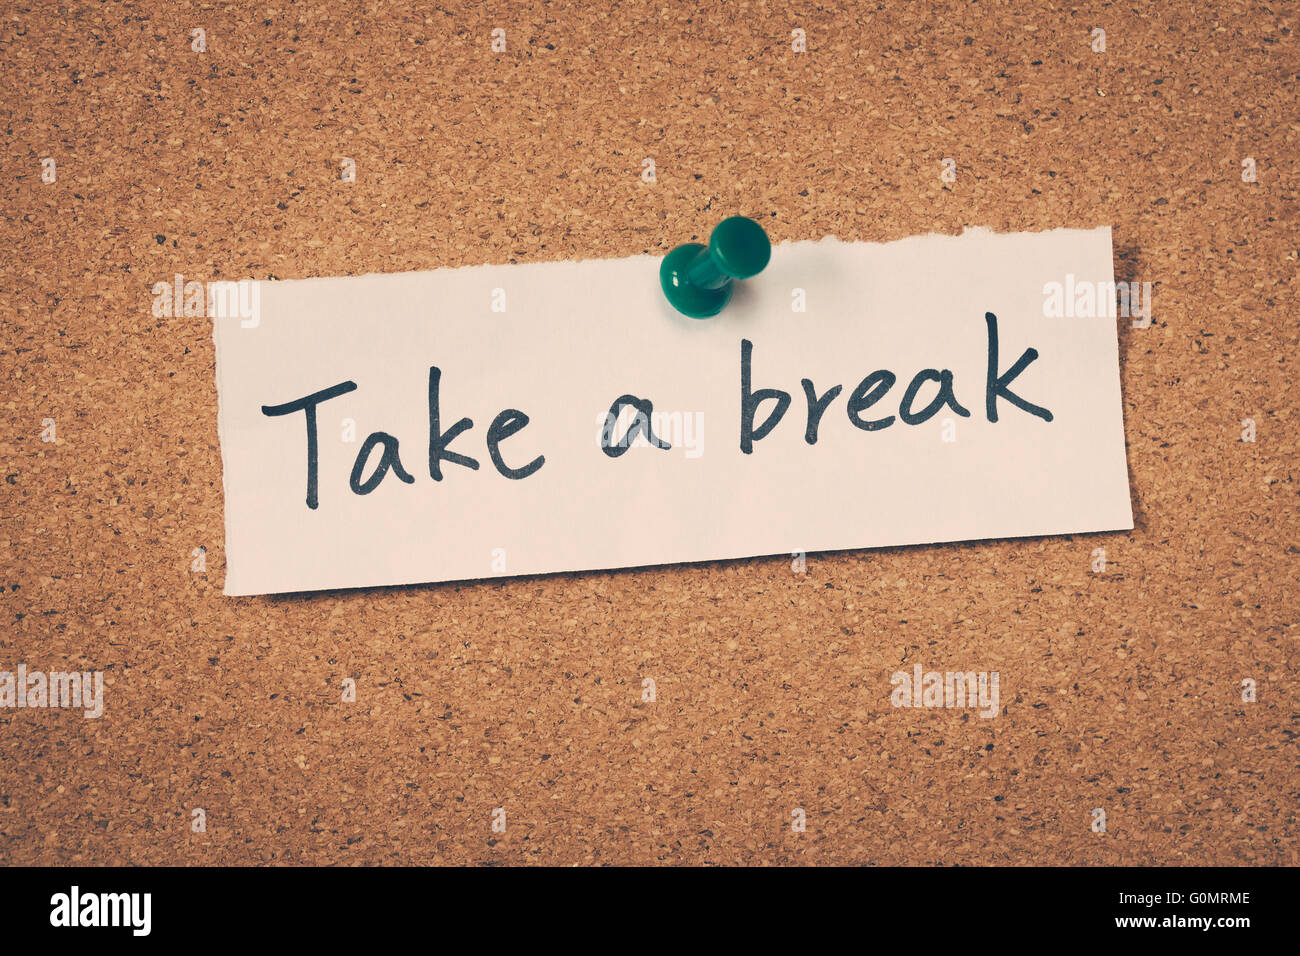 Take a break Stock Photo